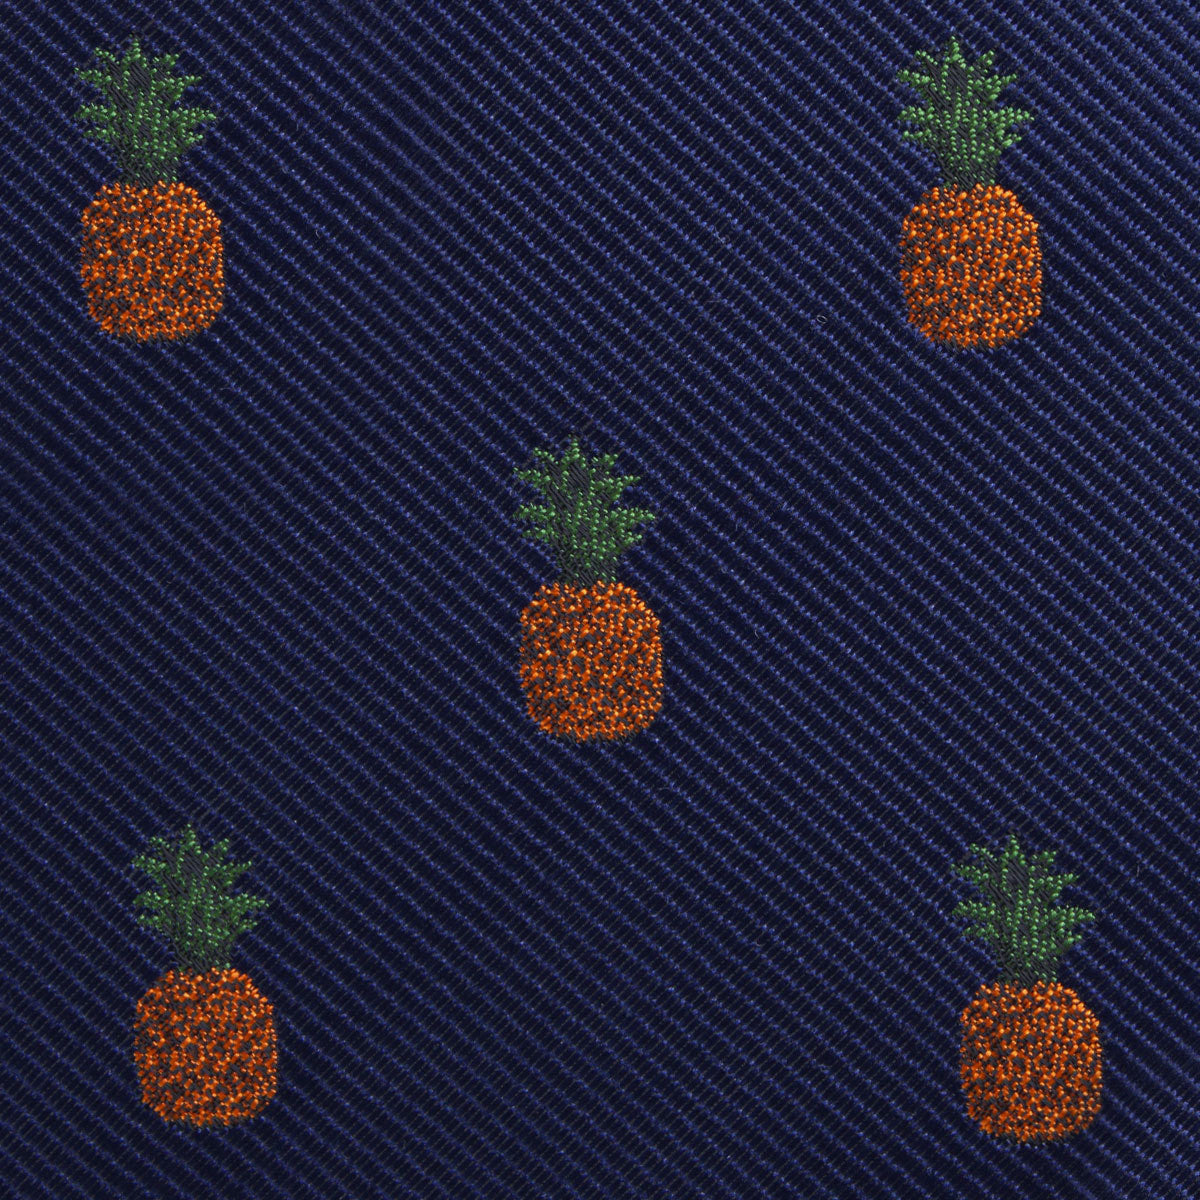 Pineapple Fabric Kids Diamond Bow Tie